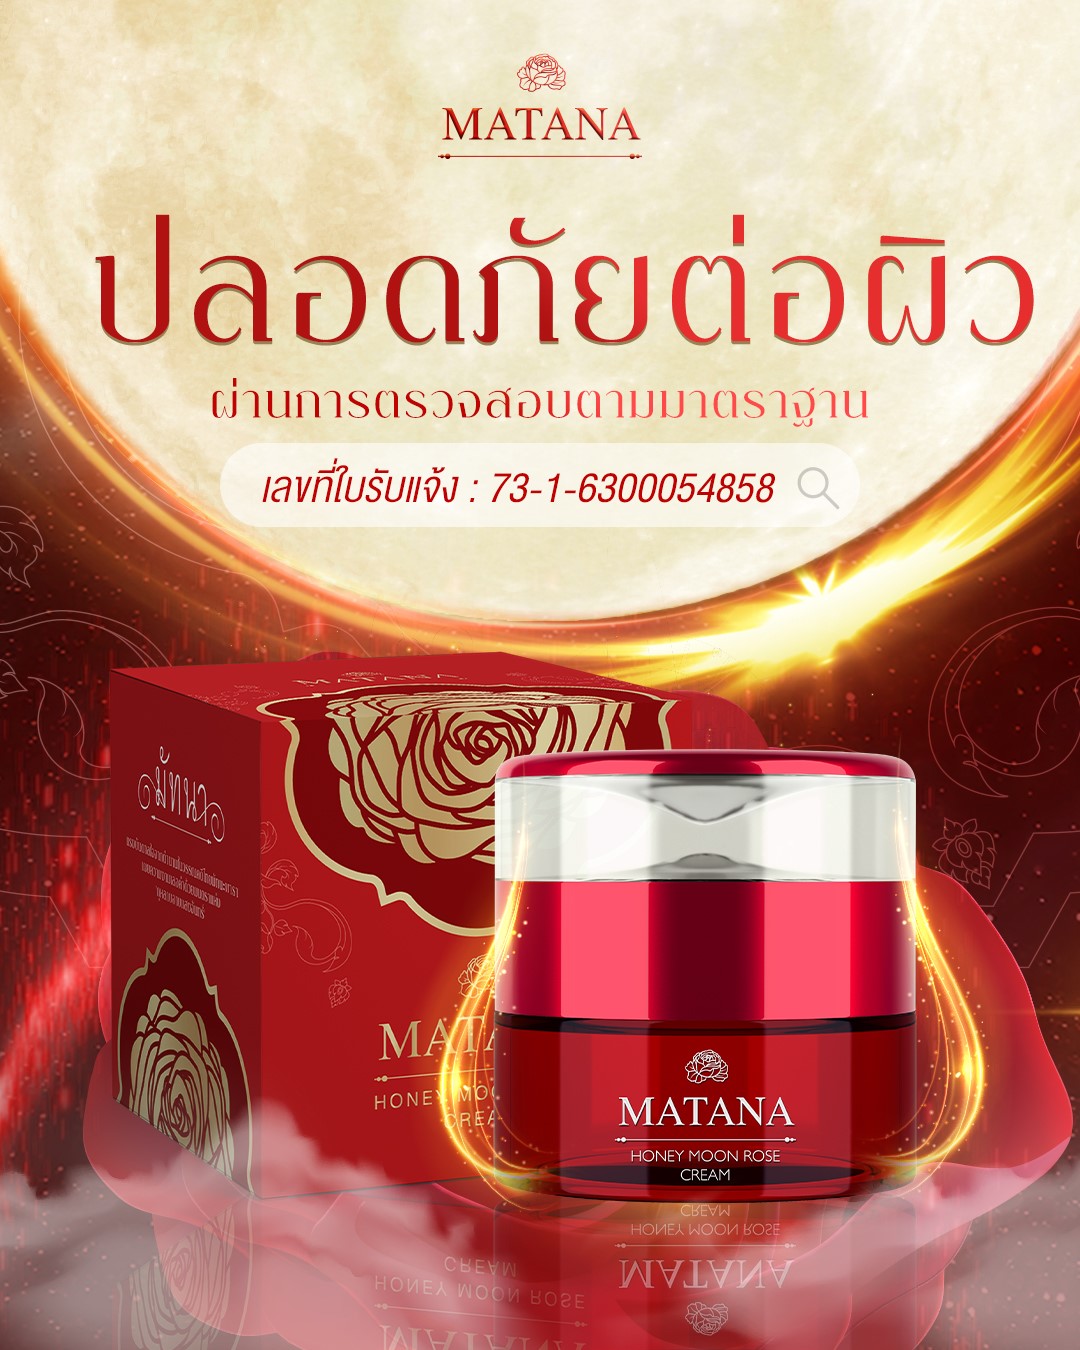 Matana Honey Moon Rose Cream ครีมมัทนา เข้มข้น อัดแน่นด้วยประสิทธิภาพ